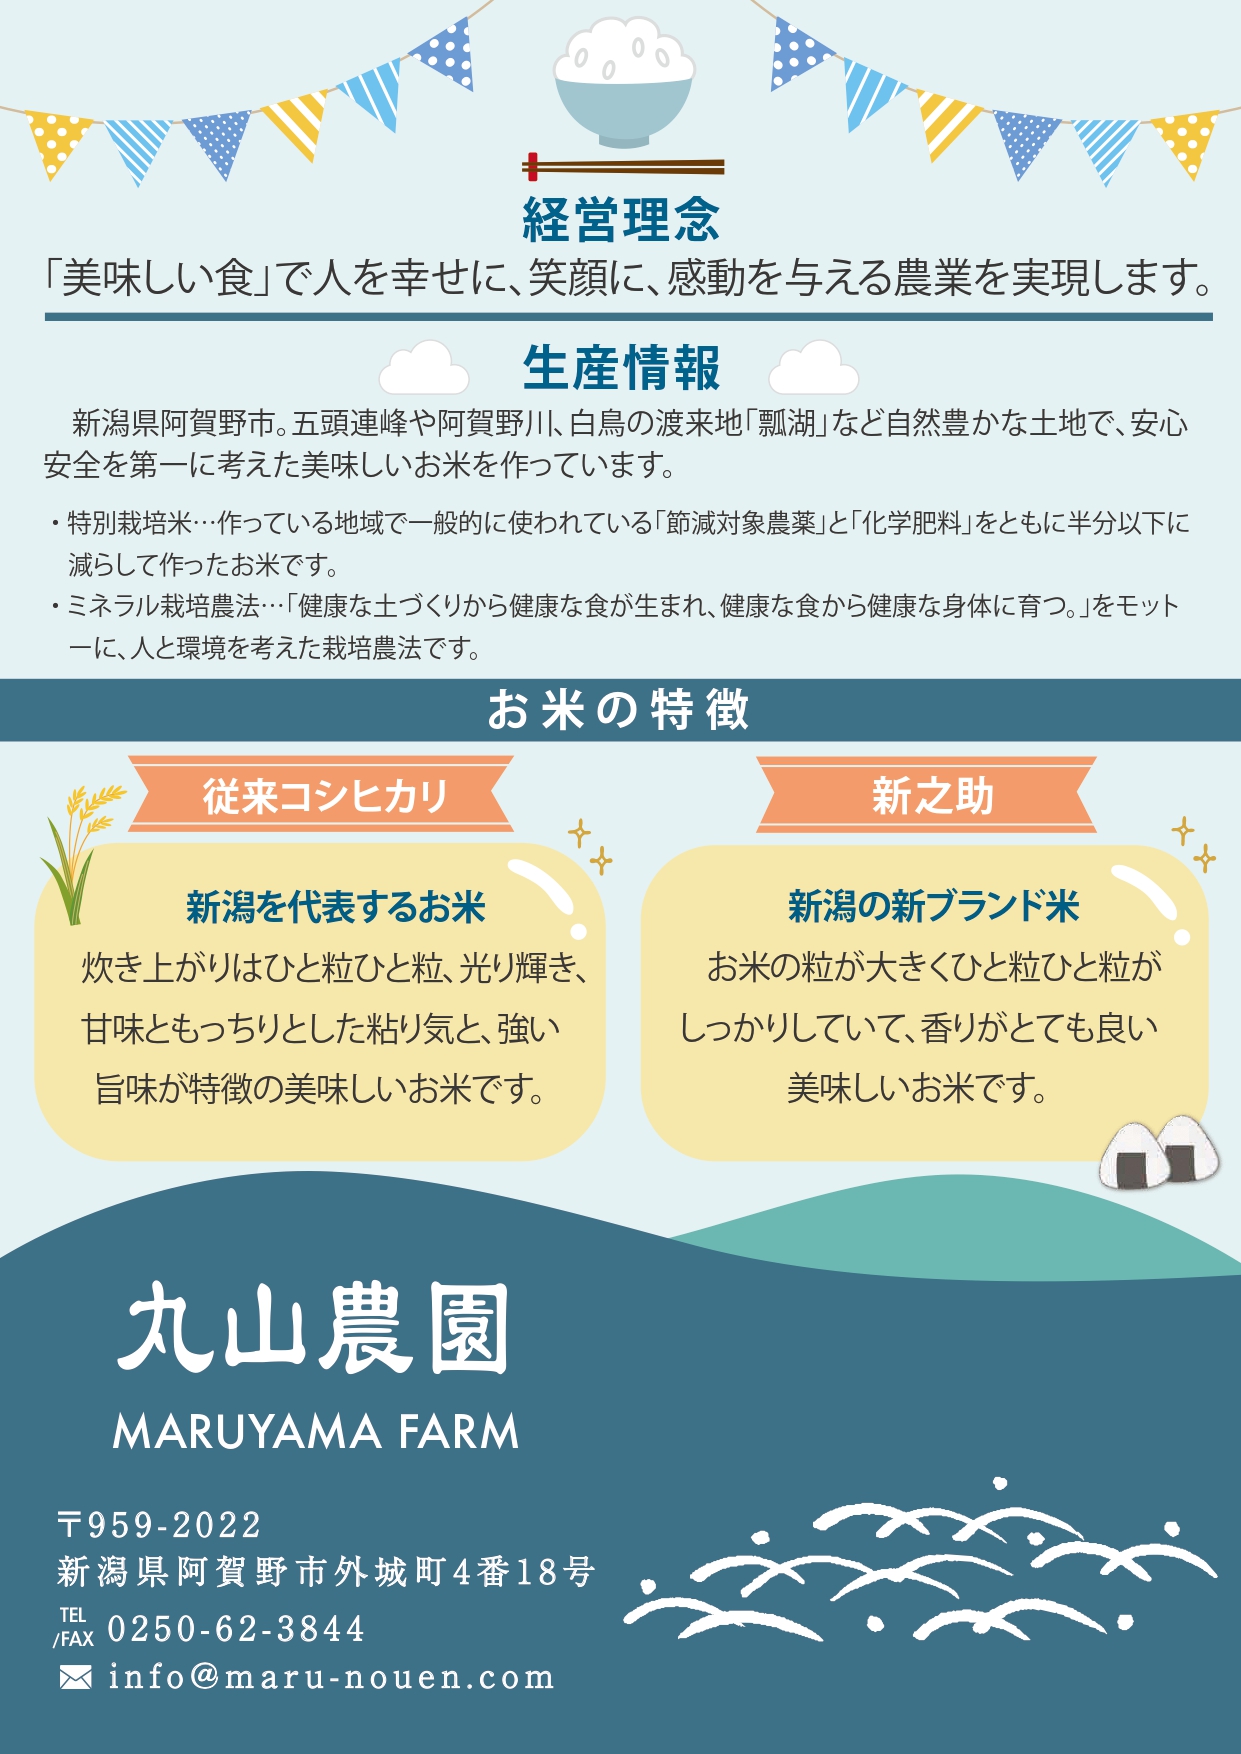 【新潟県認証米】  特別栽培米 新之助10kg (5kg×2袋) 阿賀野市産 3F04022